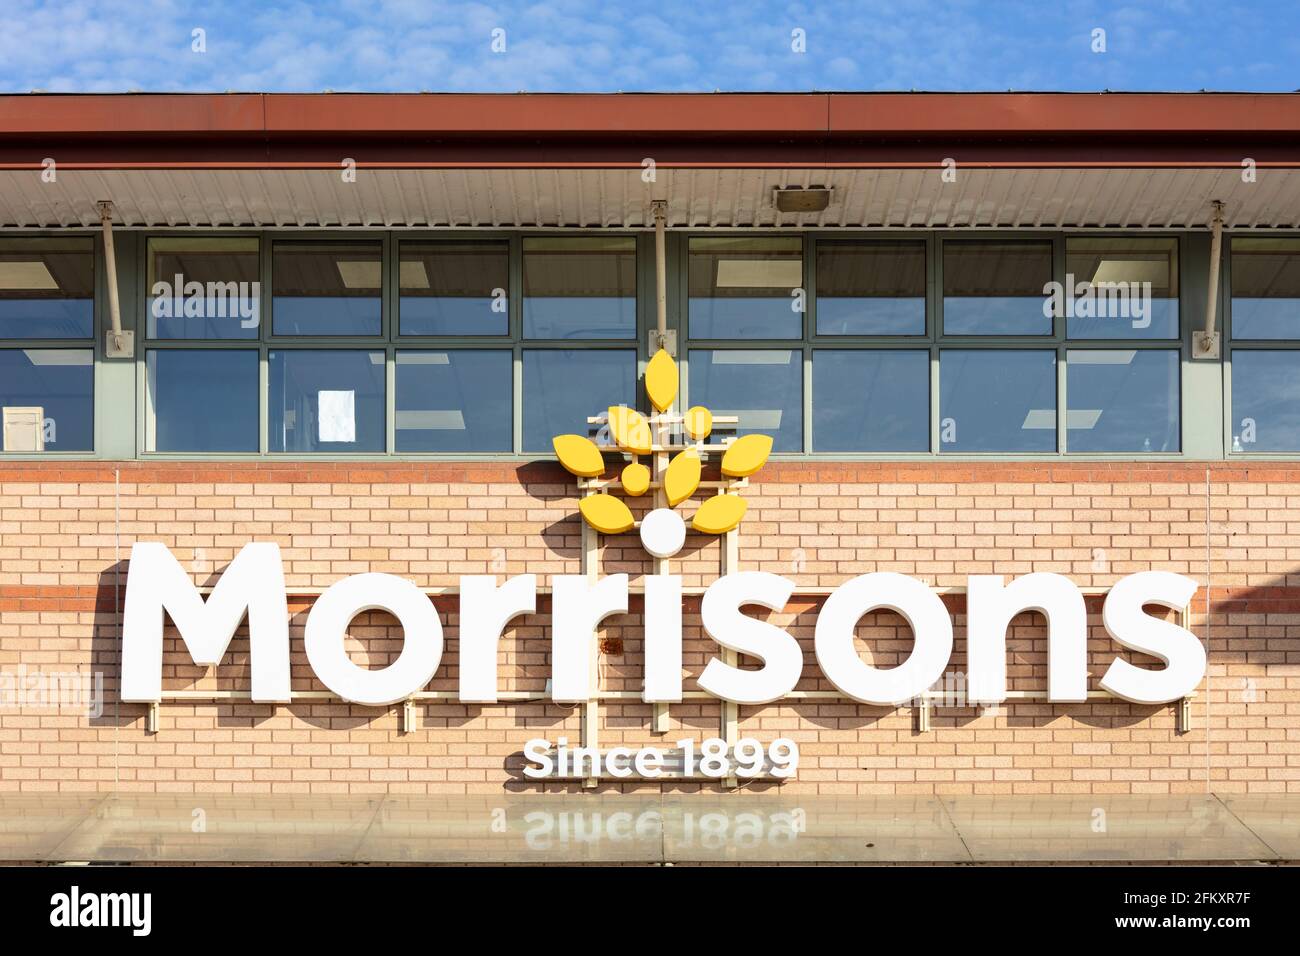 Le logo du supermarché Morrisons et le parc de magasins de Victoria devant le magasin Netherfield Nottingham East Midlands Angleterre GB Royaume-Uni Europe Banque D'Images